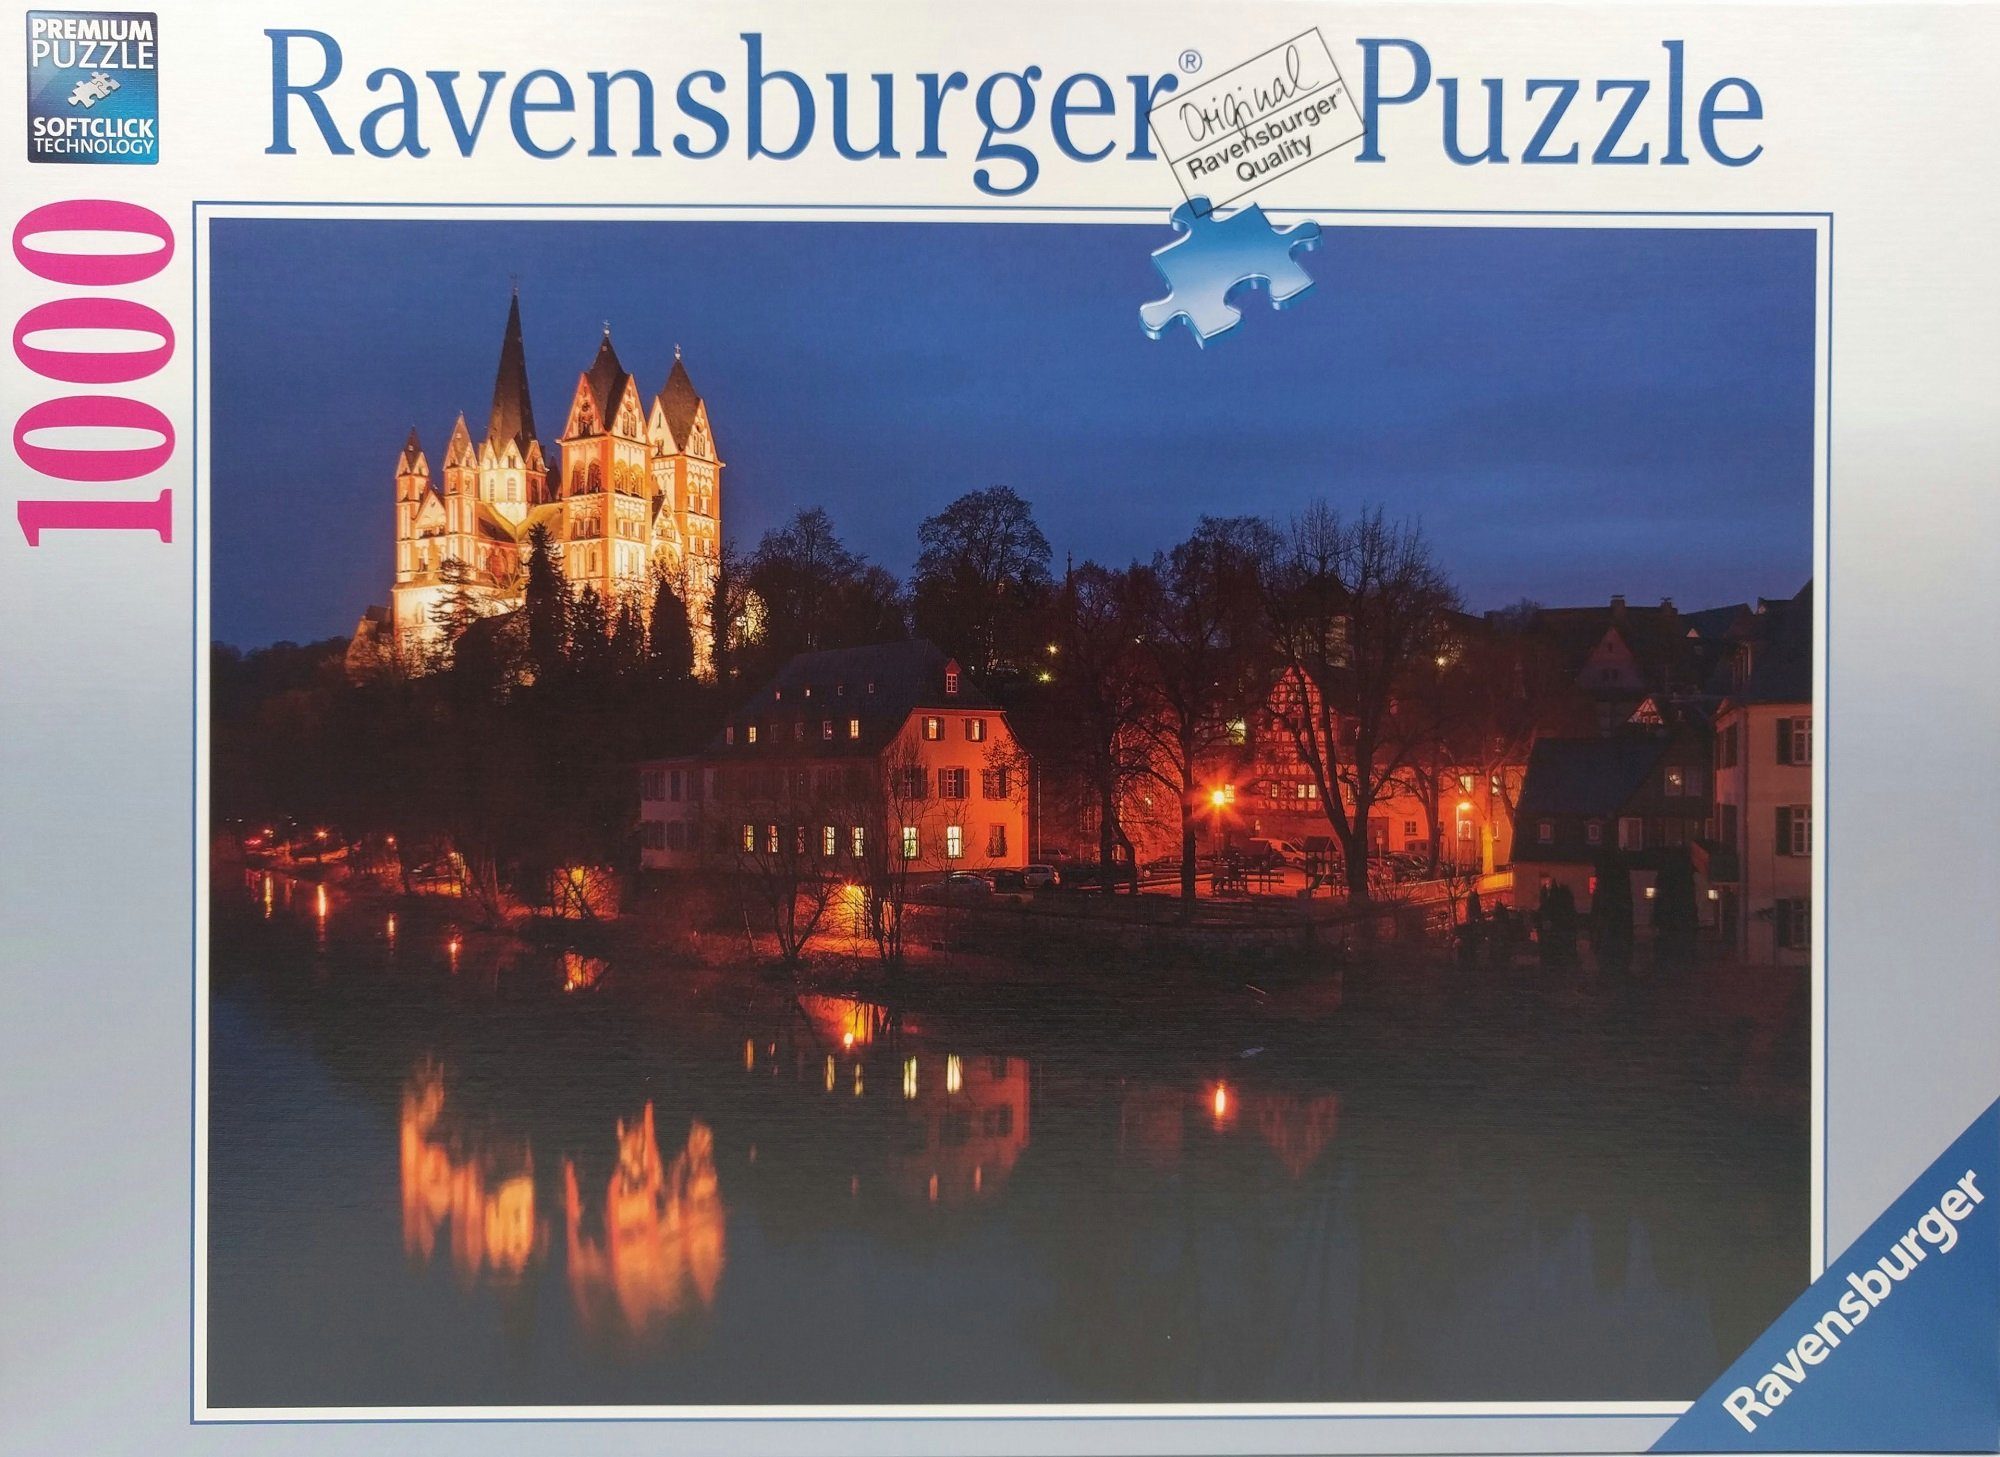 Ravensburger Puzzle Ravensburger - Limburger bei Dom 1000 Puzzleteile, 1000 Puzzle Teile Nacht